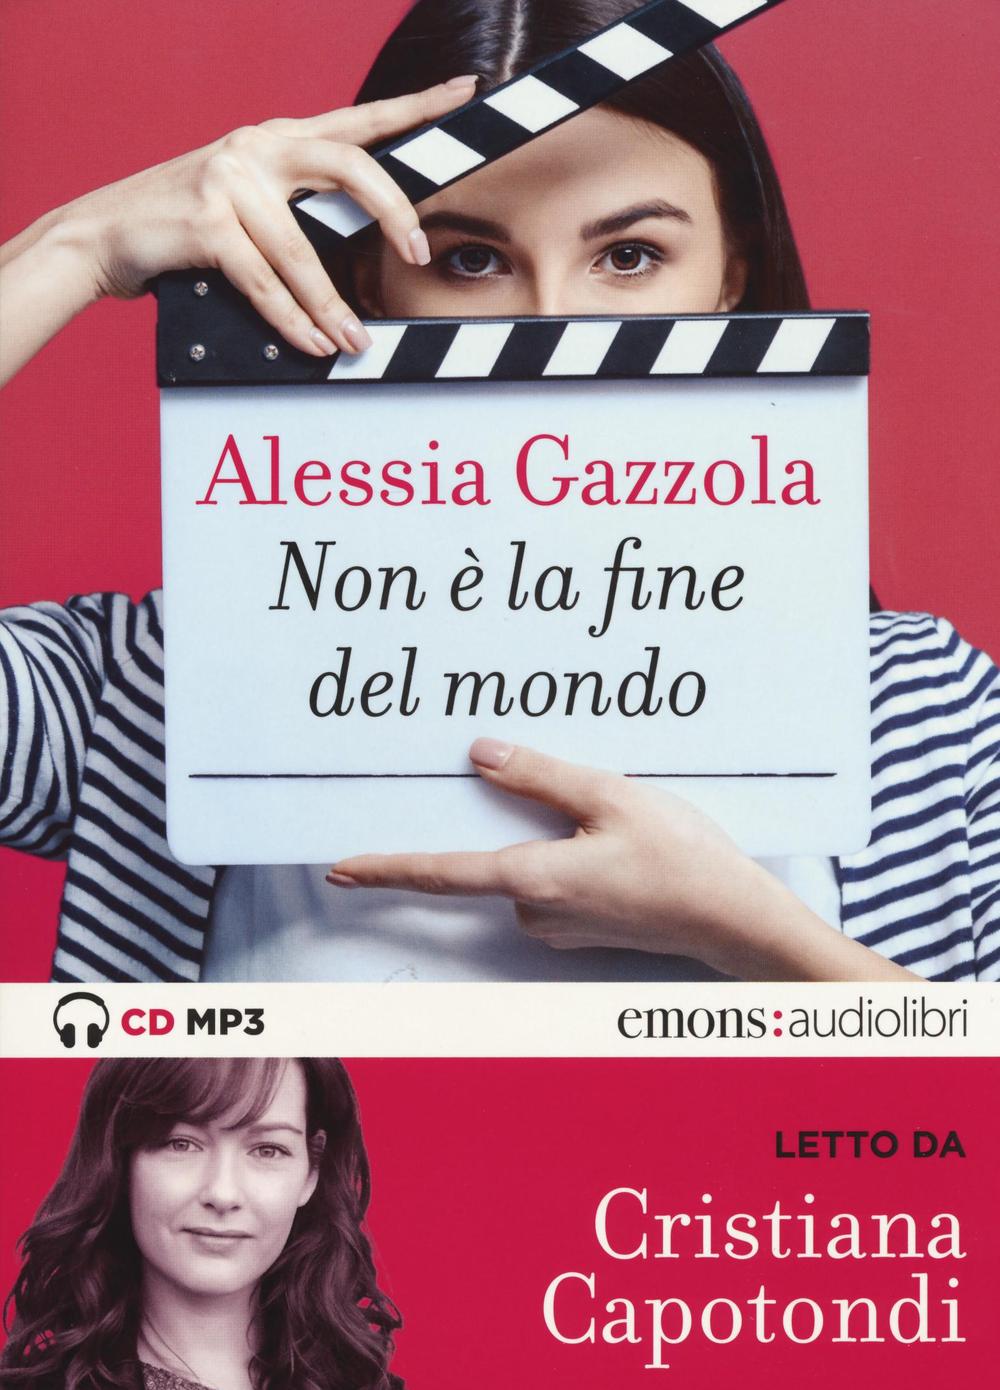 Audio Non è la fine del mondo letto da Cristiana Capotondi. Audiolibro Alessia Gazzola